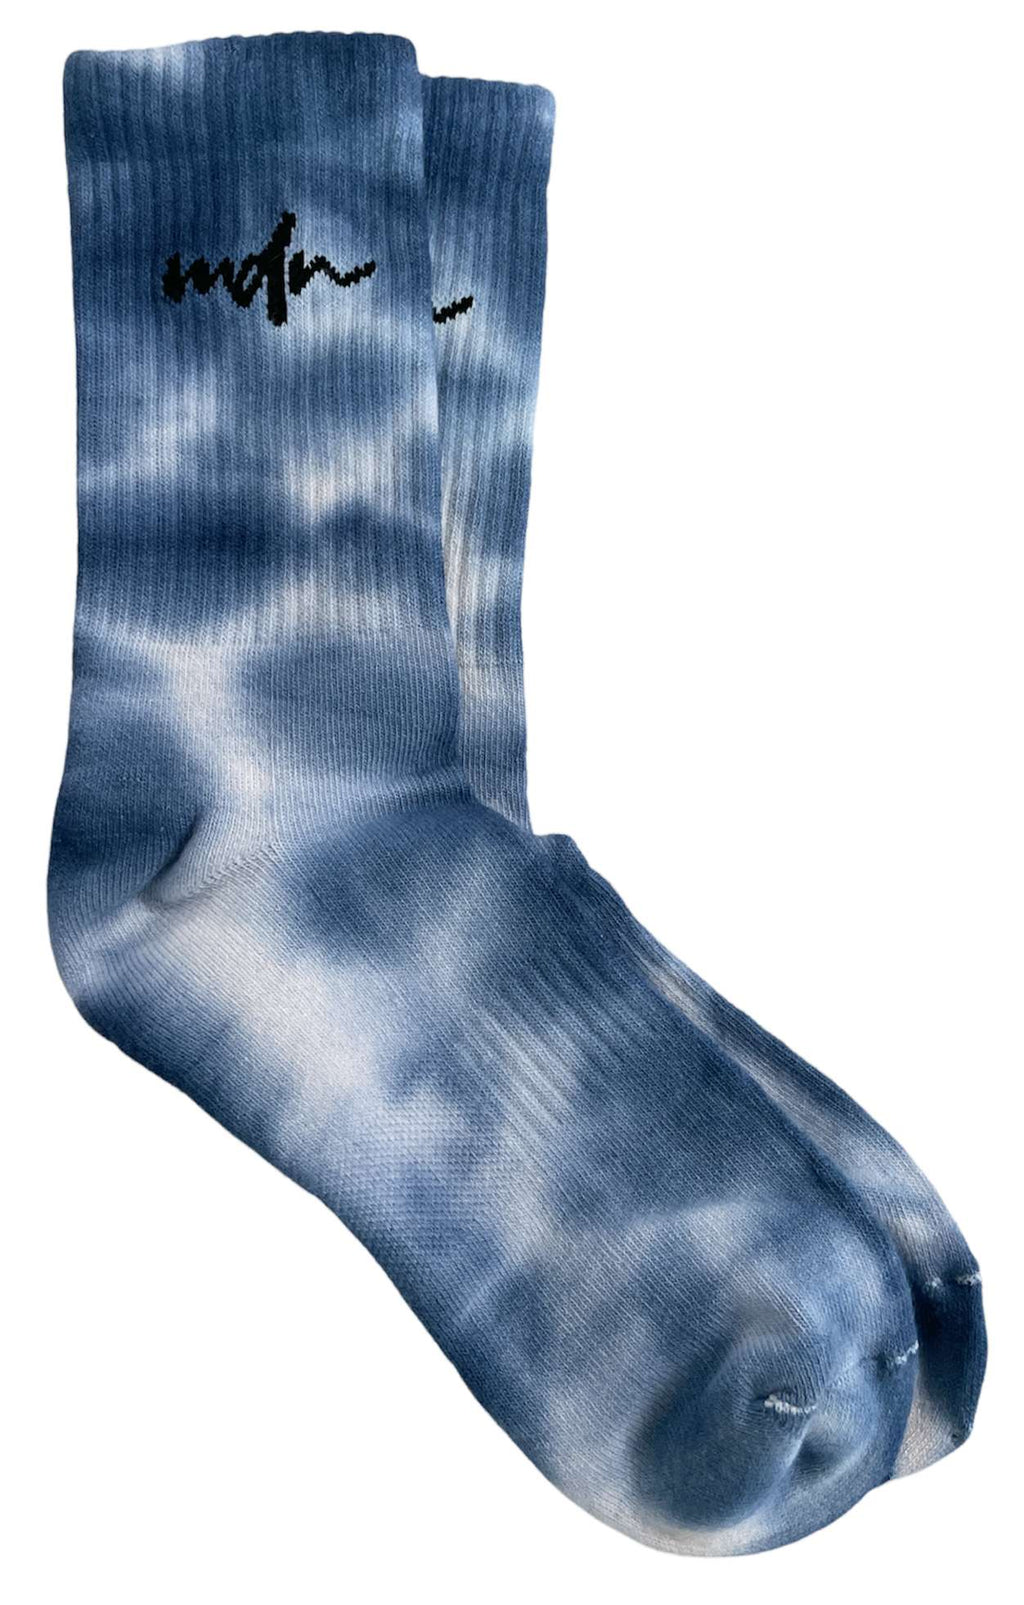  Mdn Calze Tie Dye Socks Multi Multicolore Uomo - 1